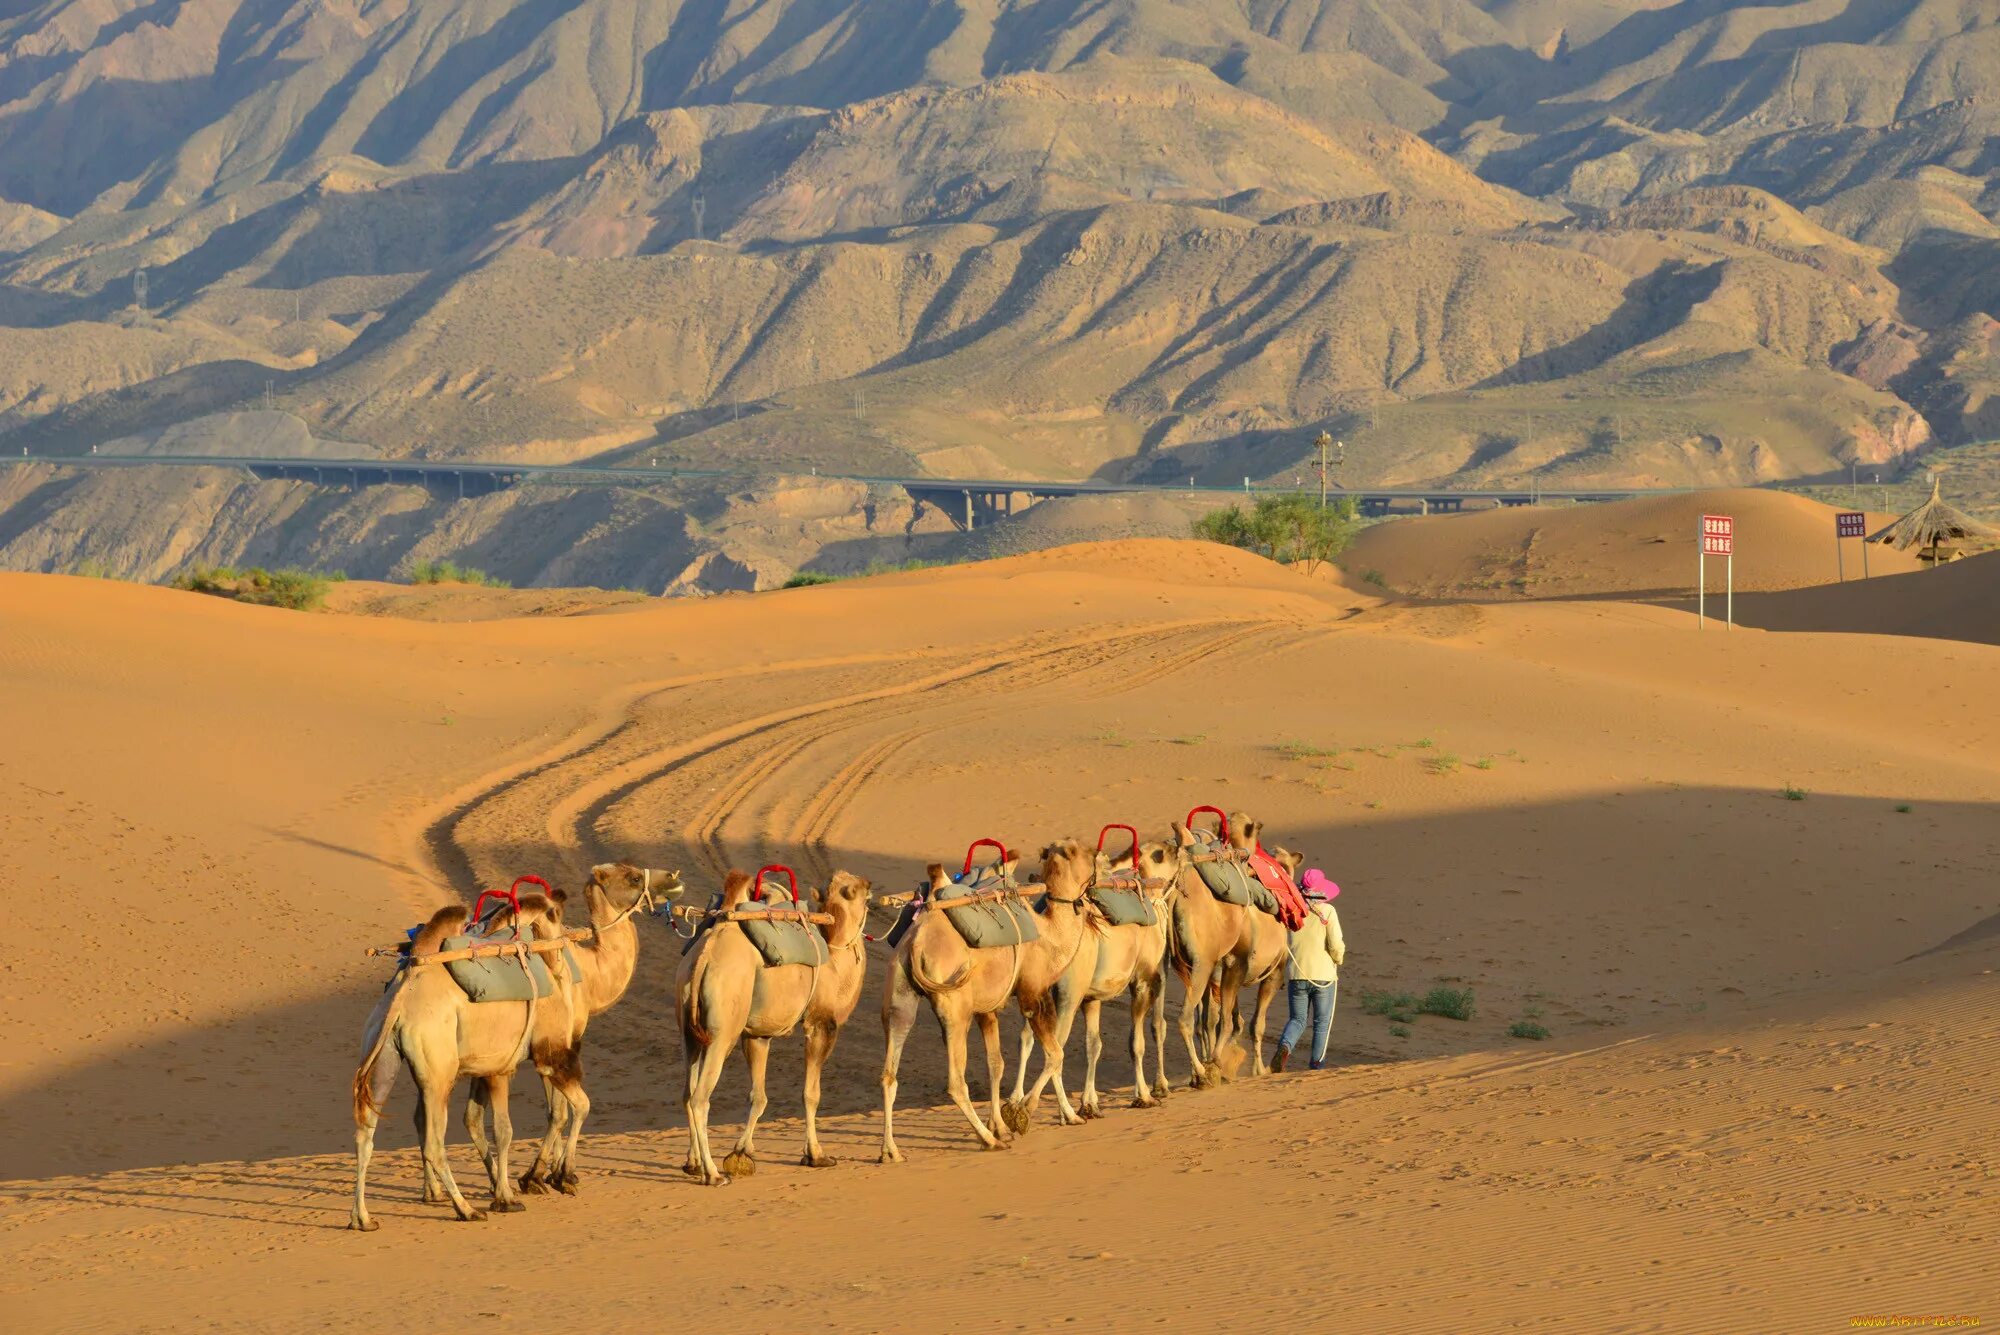 Едет караван. Верблюд Караван пустыни. Караван верблюдов в пустыне. Караван с верблюдами в пустыне. Караван бактрианов.